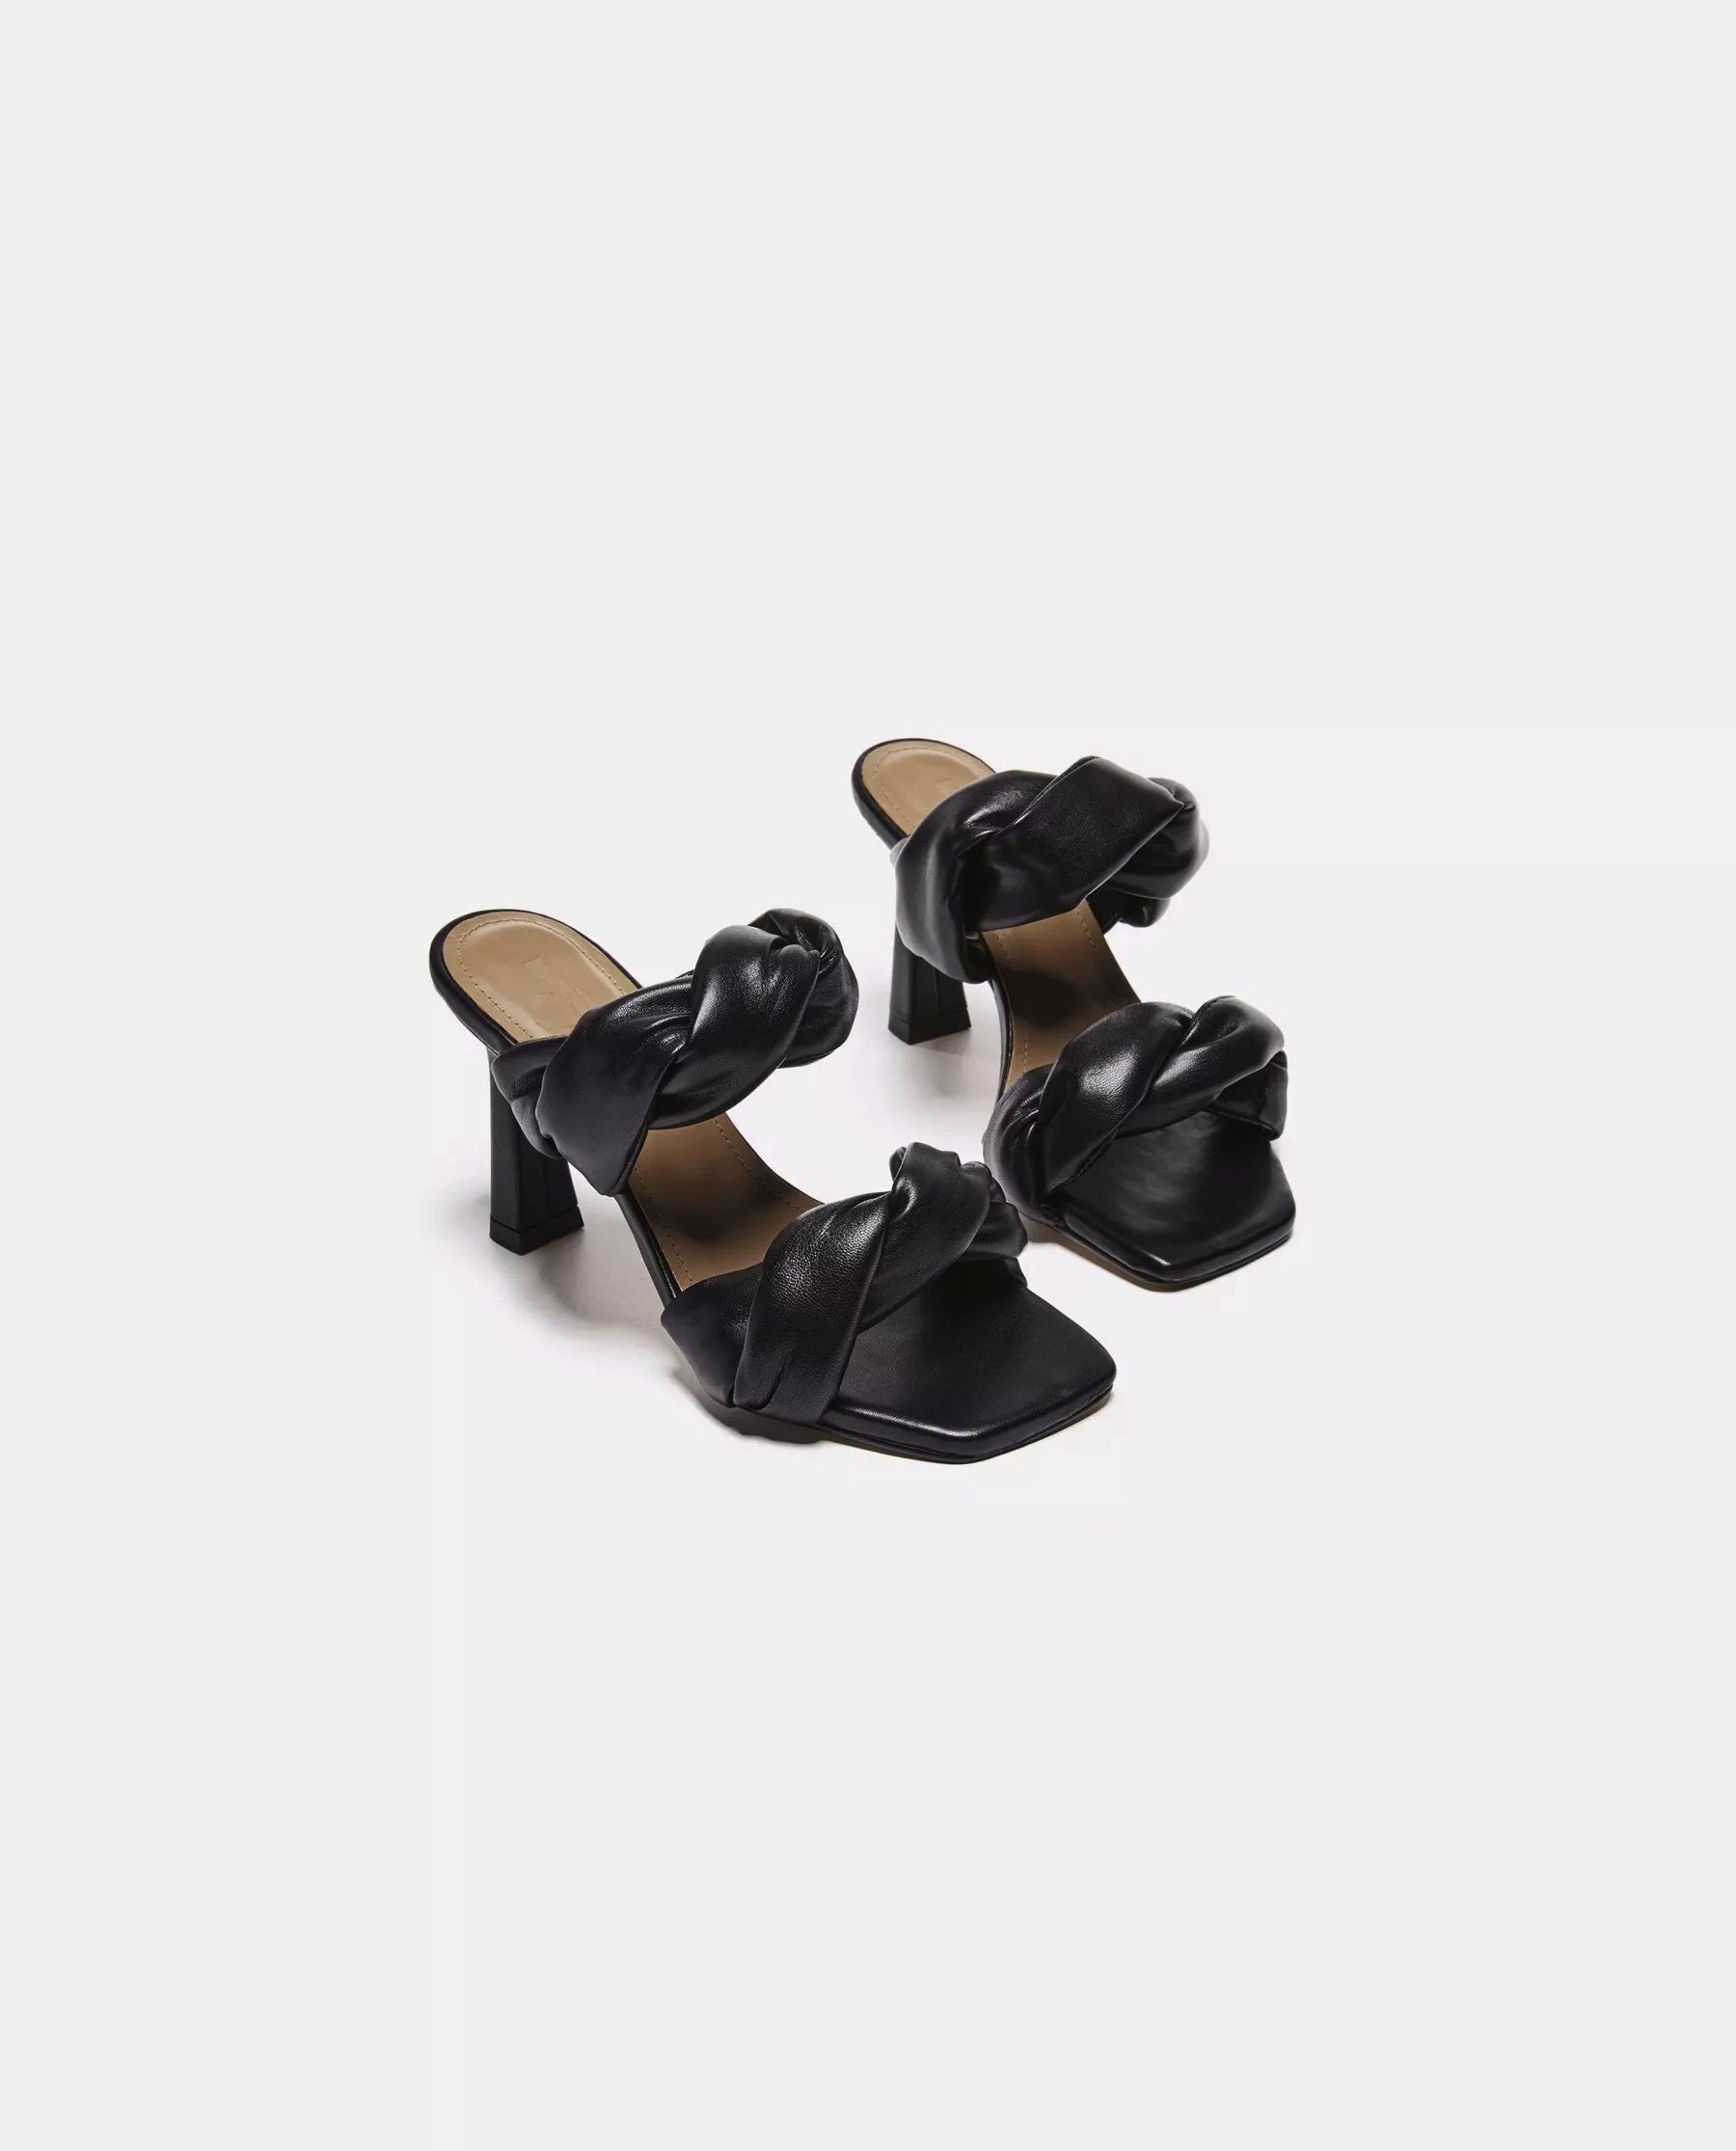 River Leather Black Heeled Sandals 21010416001-001 - 3